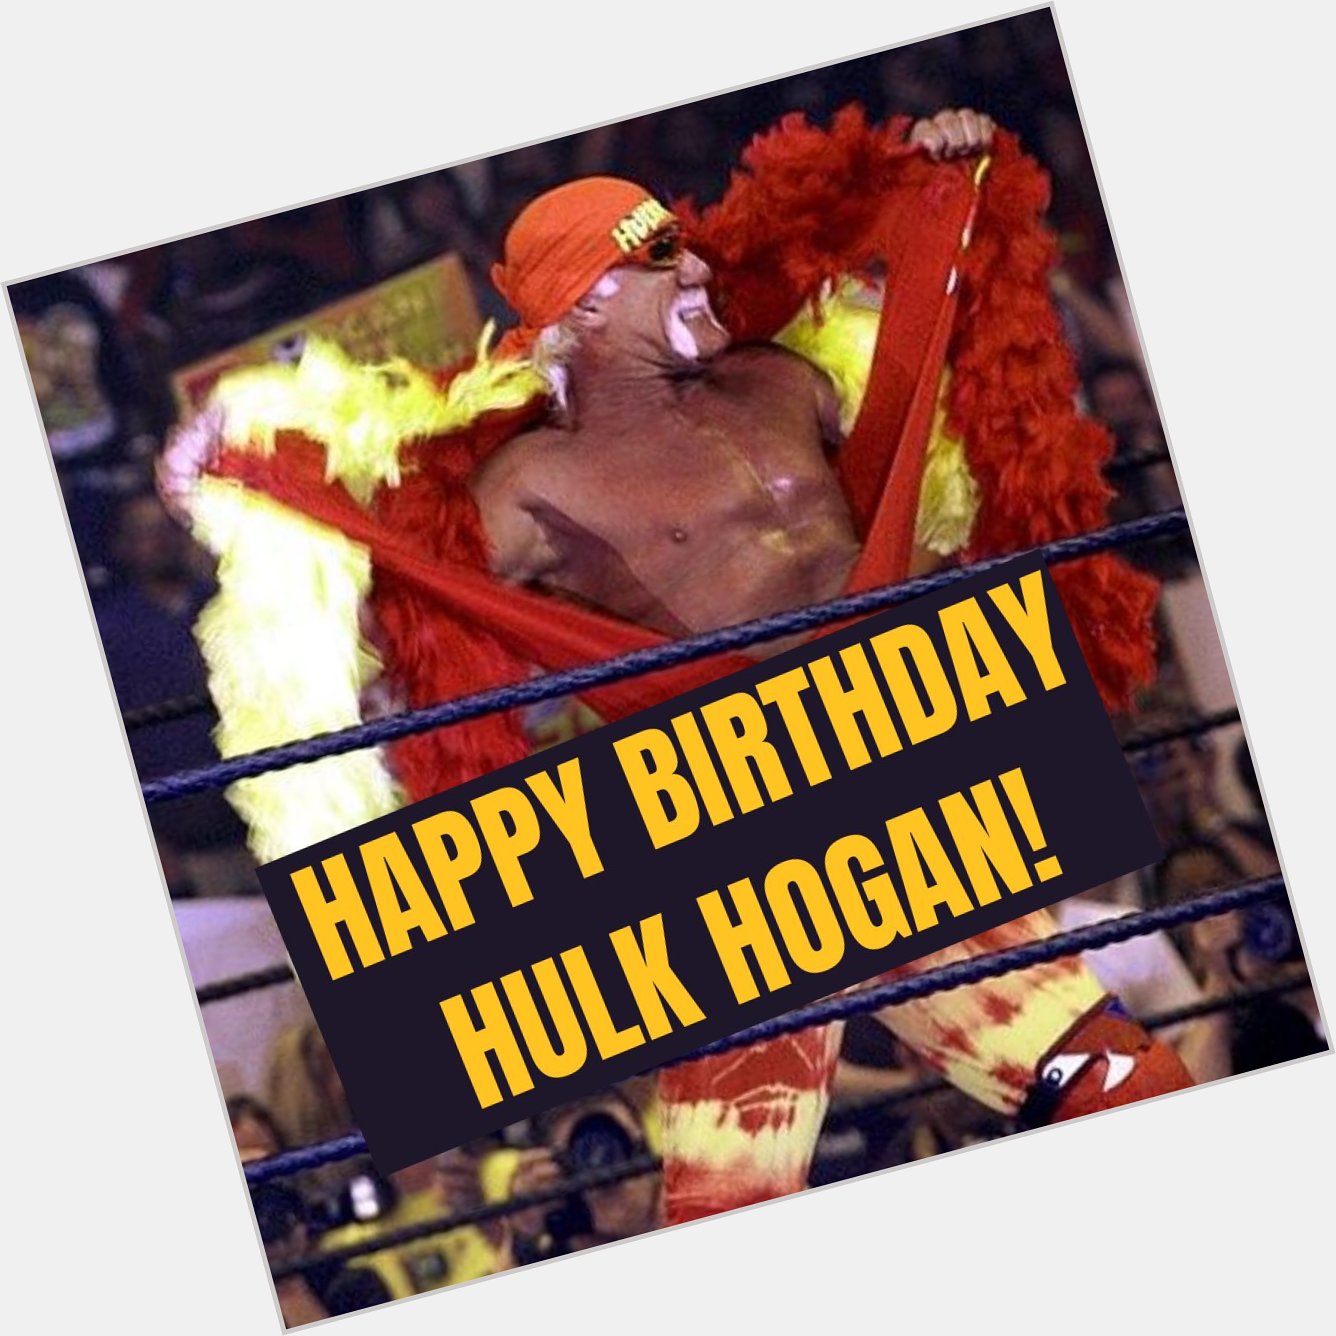 Happy 68th Birthday to Hulk Hogan! 